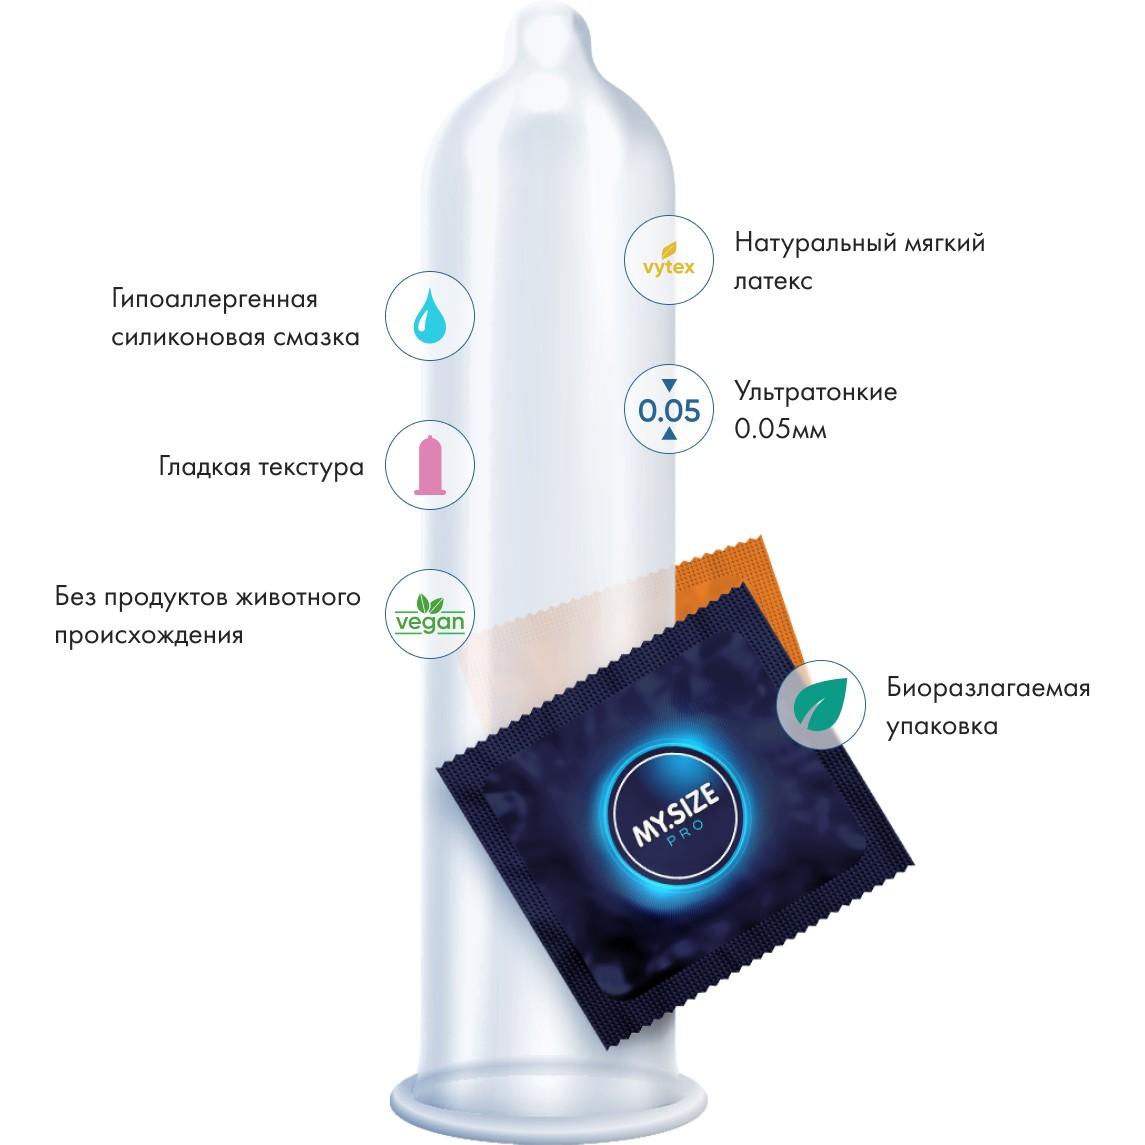 My Size Pro презервативы увеличенного размера 10 шт. Vestalshop.ru - Изображение 3